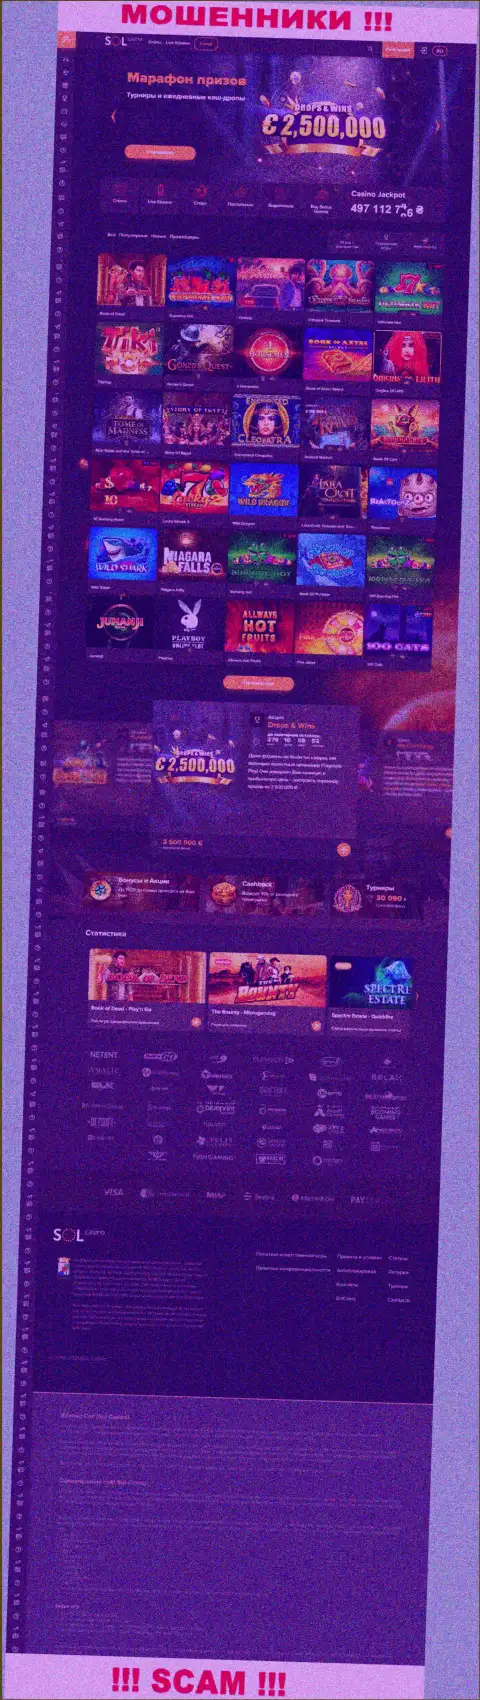 Главная страничка официального портала разводил Sol Casino